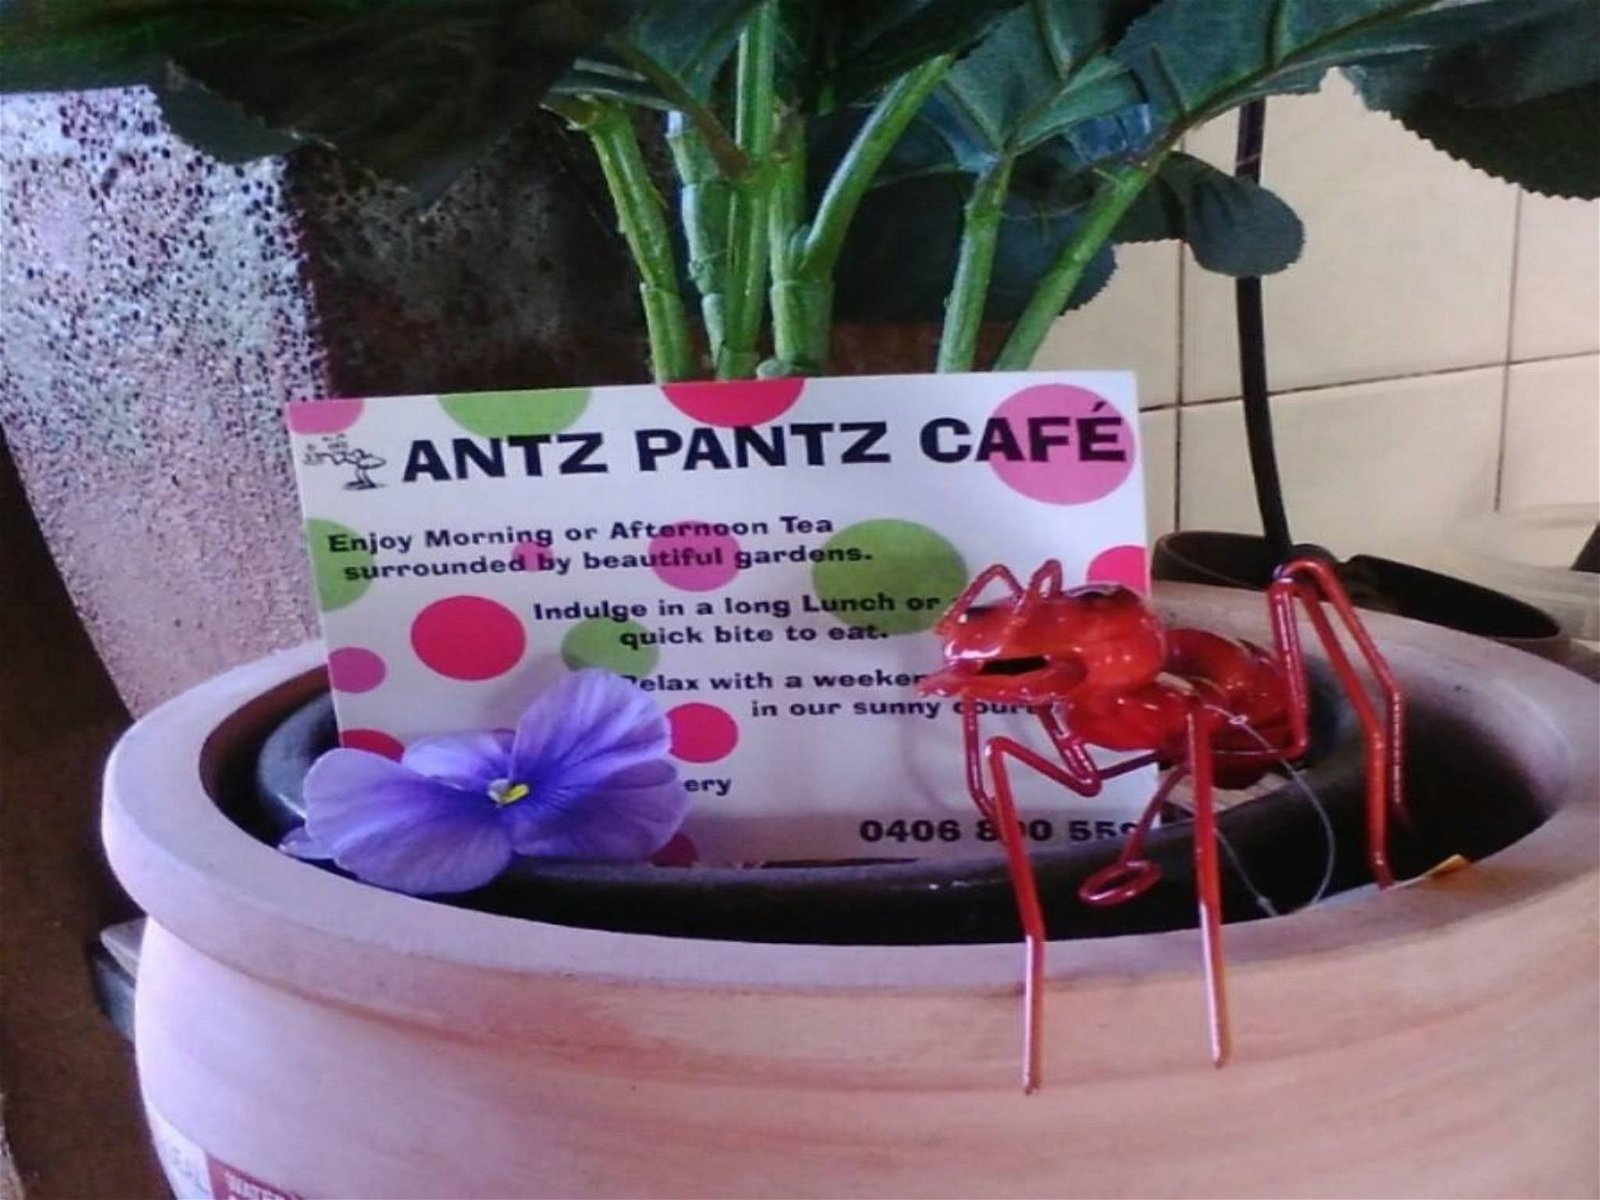 Antz Pantz Cafe - Pubs Sydney